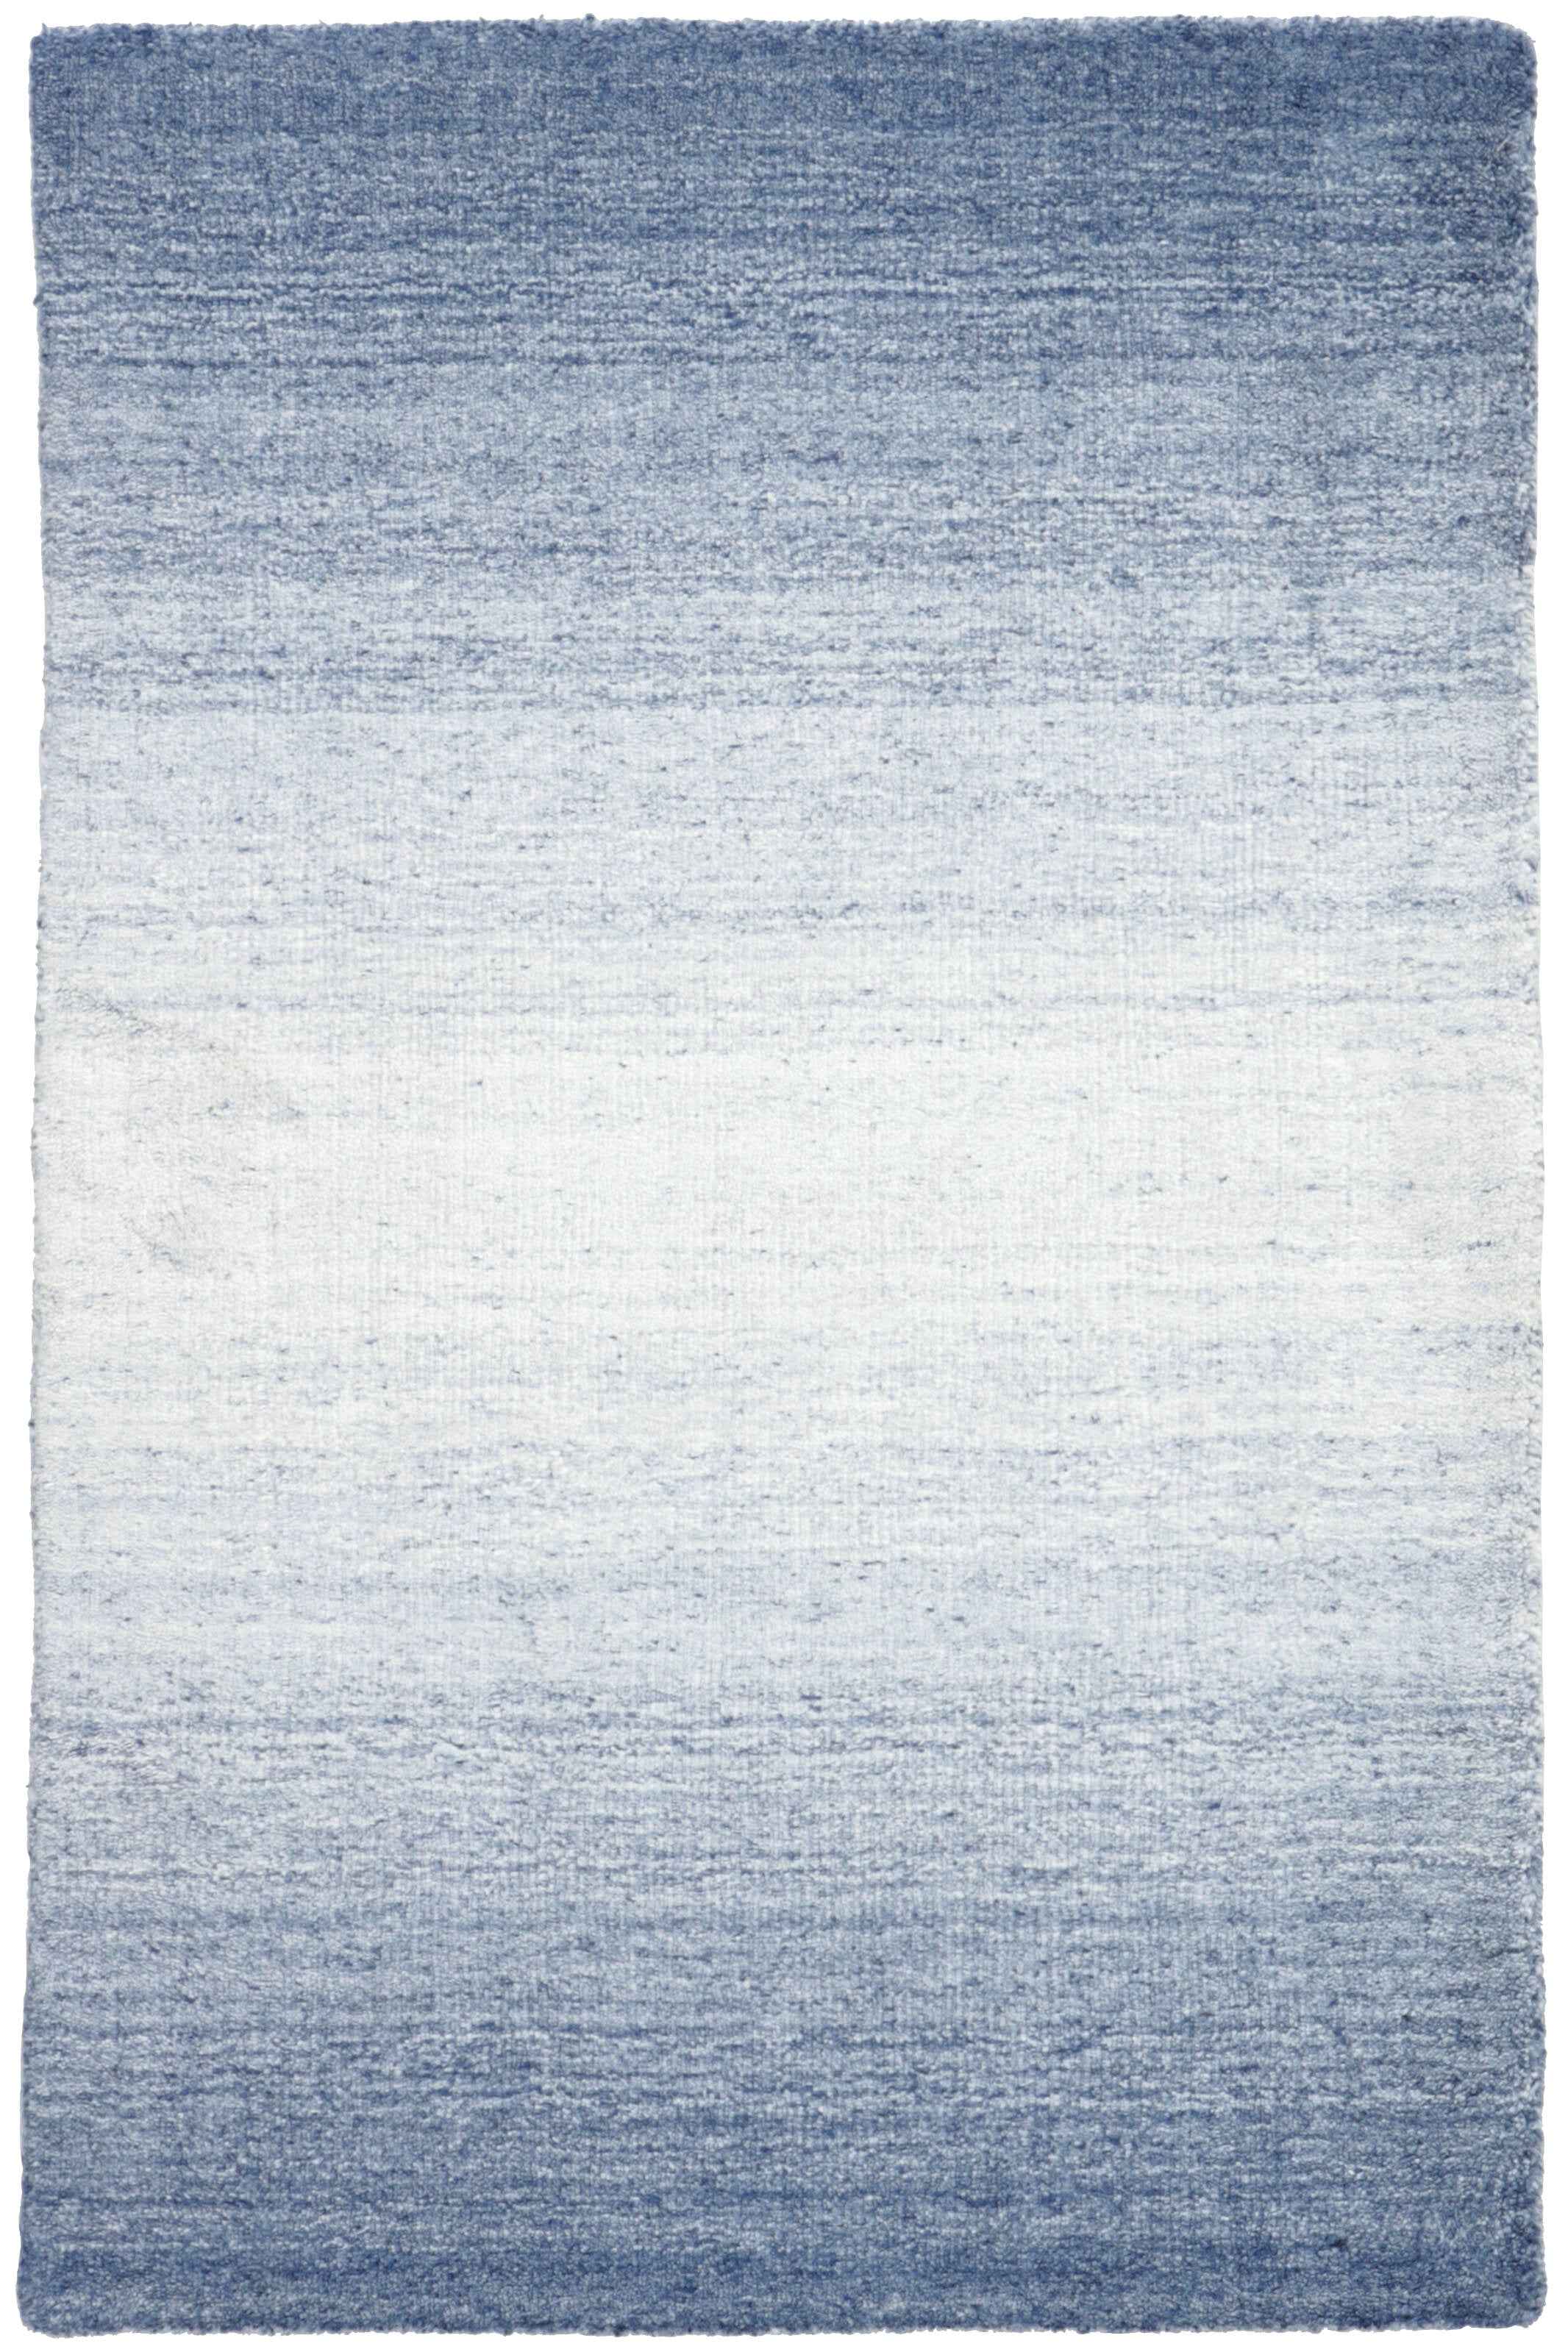 90x60 cm  Indian Wool/Viscose Blue Rug-Blau, Blue